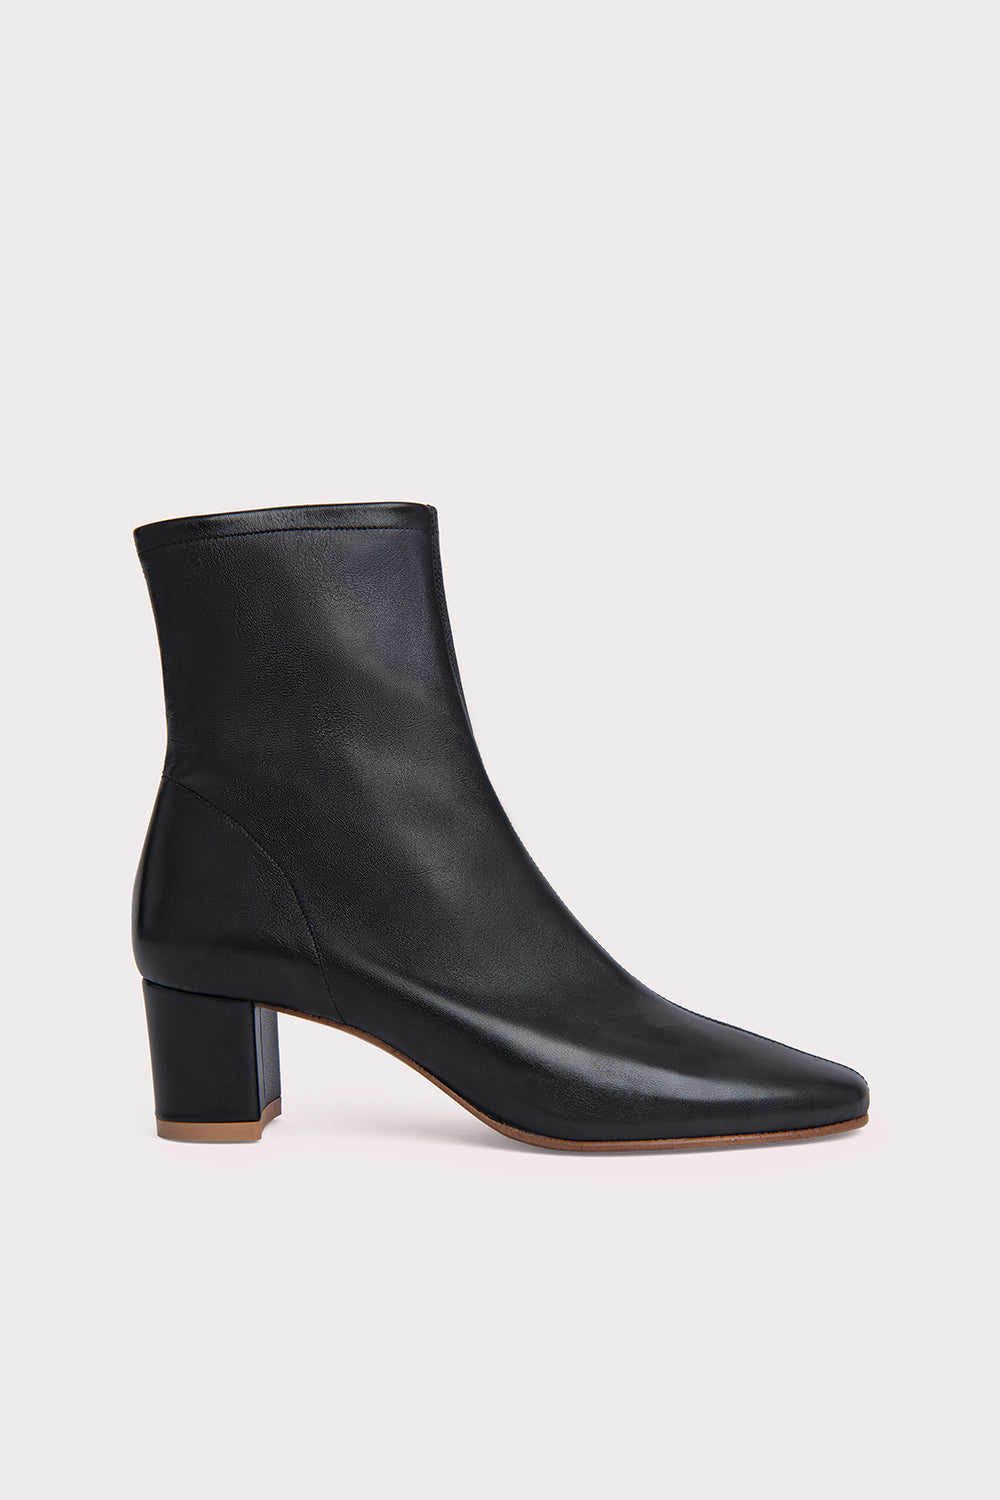 Sofia Leather Boots